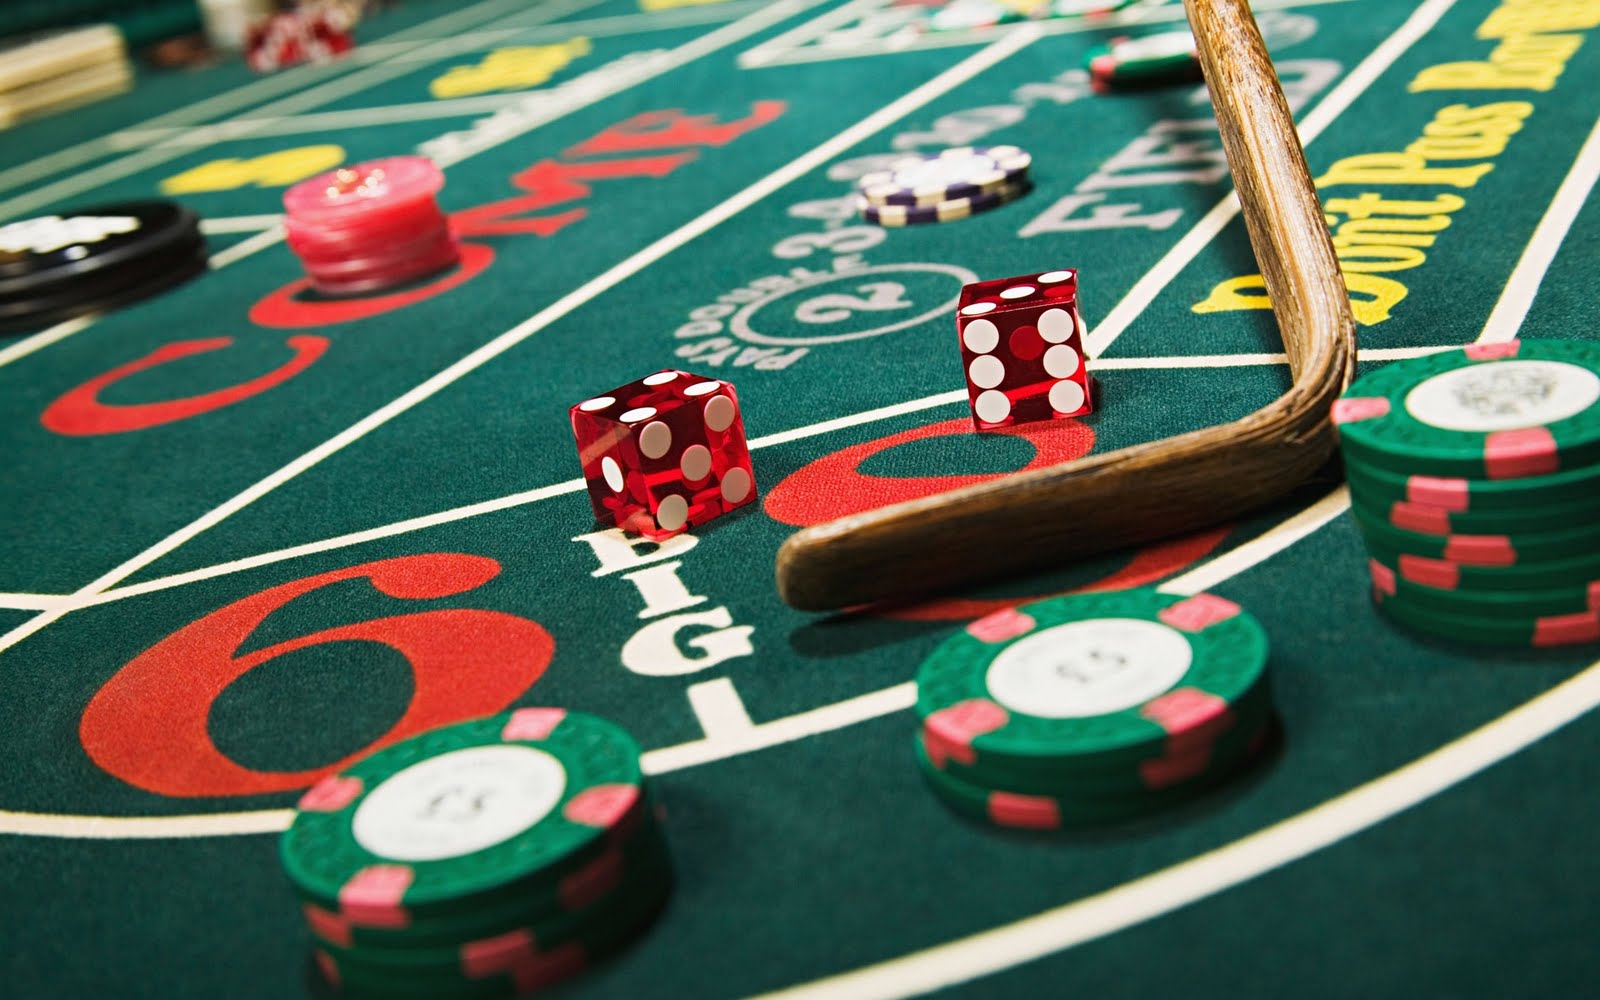 Jeux casino : vivre une expérience particulière